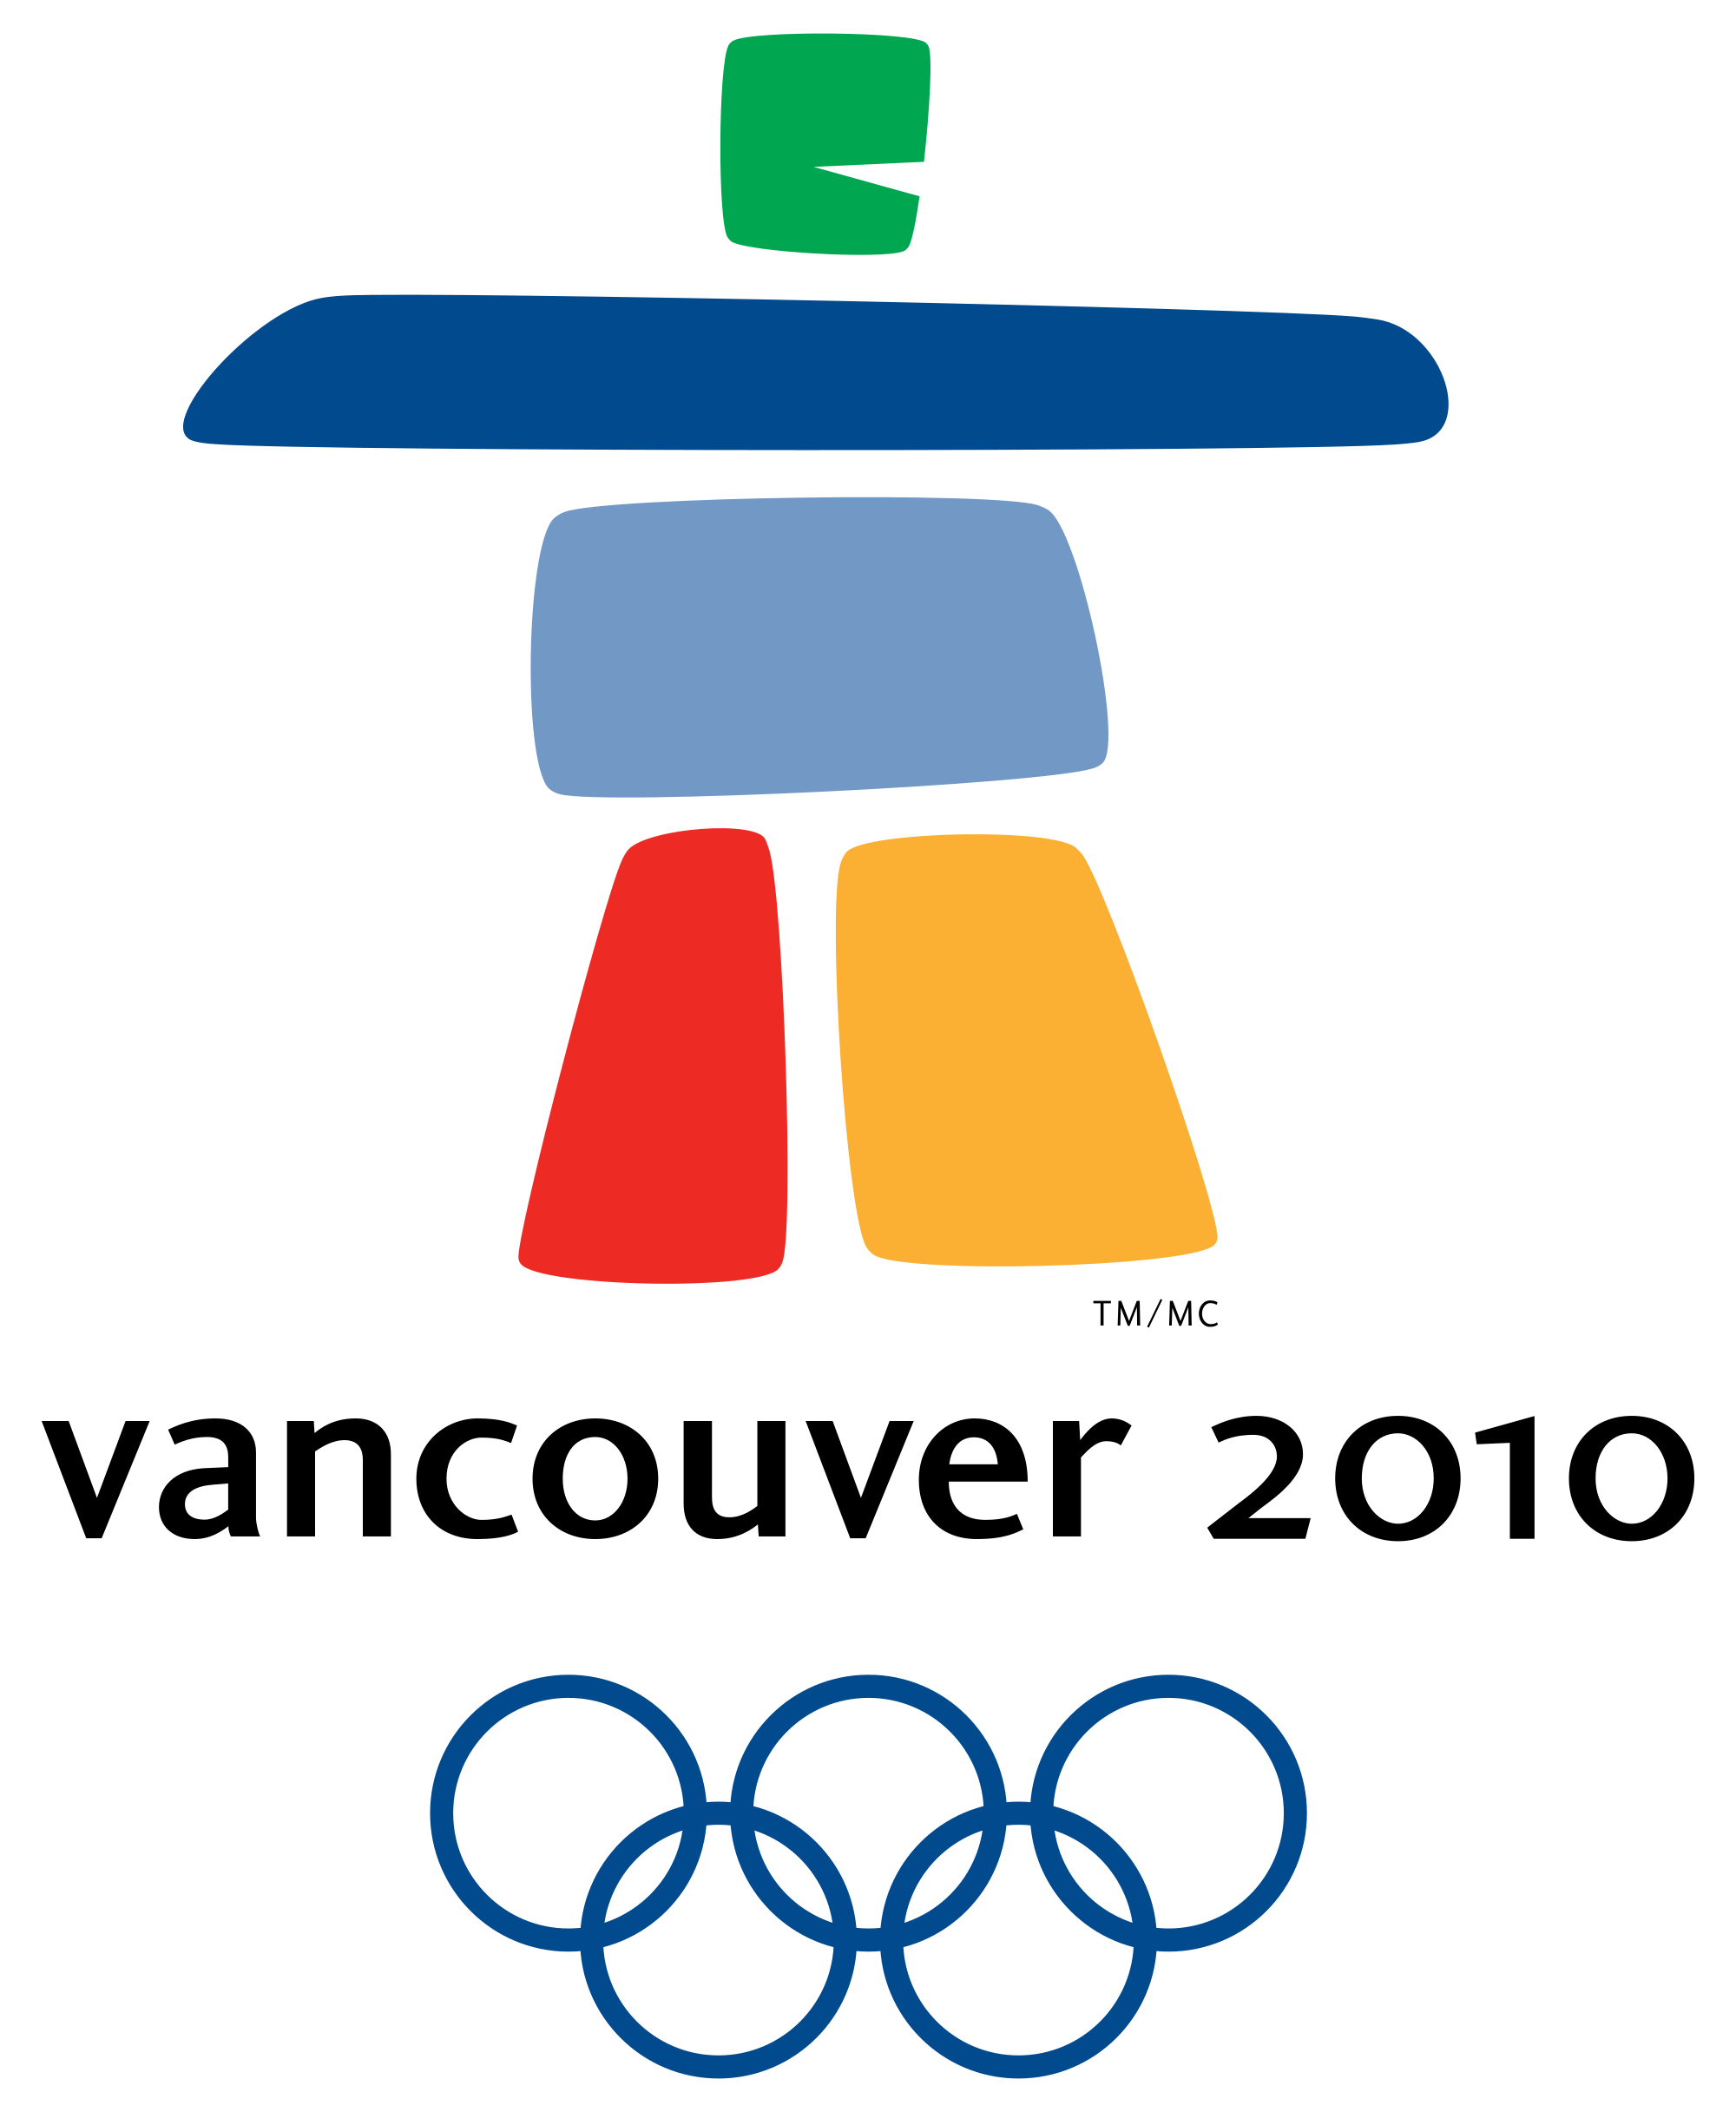 冬奥会会徽设计寓意图片